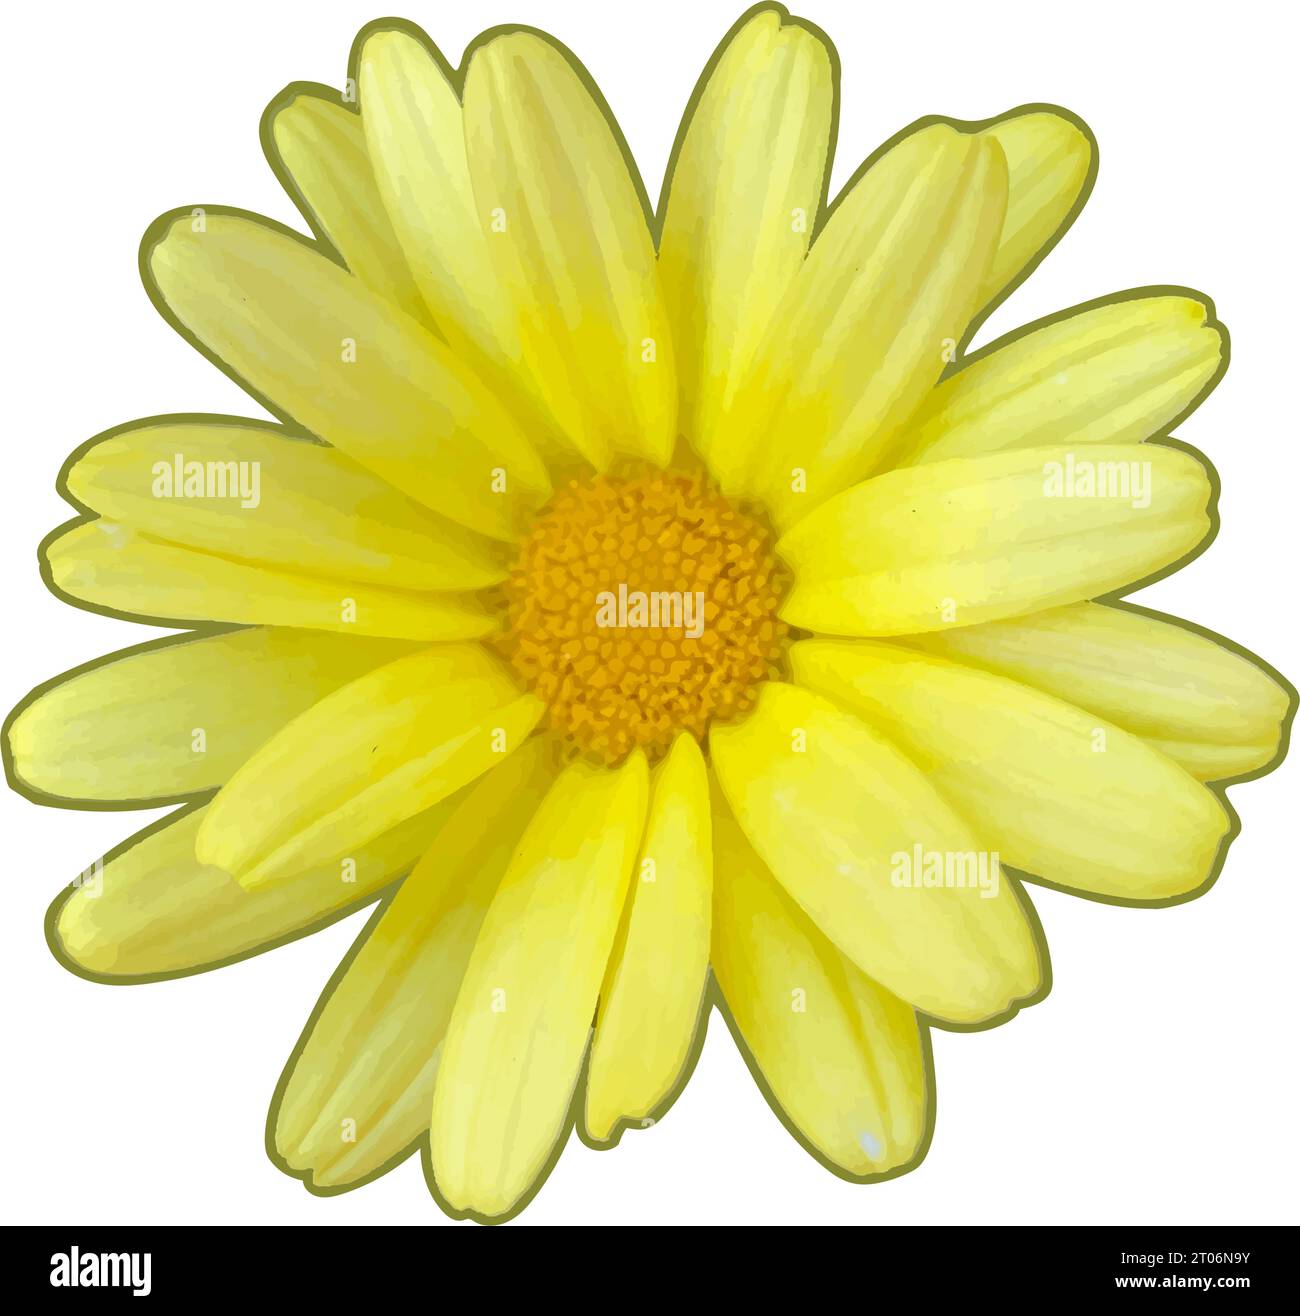 Fleur d'euryops jaune gros plan illustration tête de fleur. Illustration vectorielle vue de dessus. Isolé Illustration de Vecteur